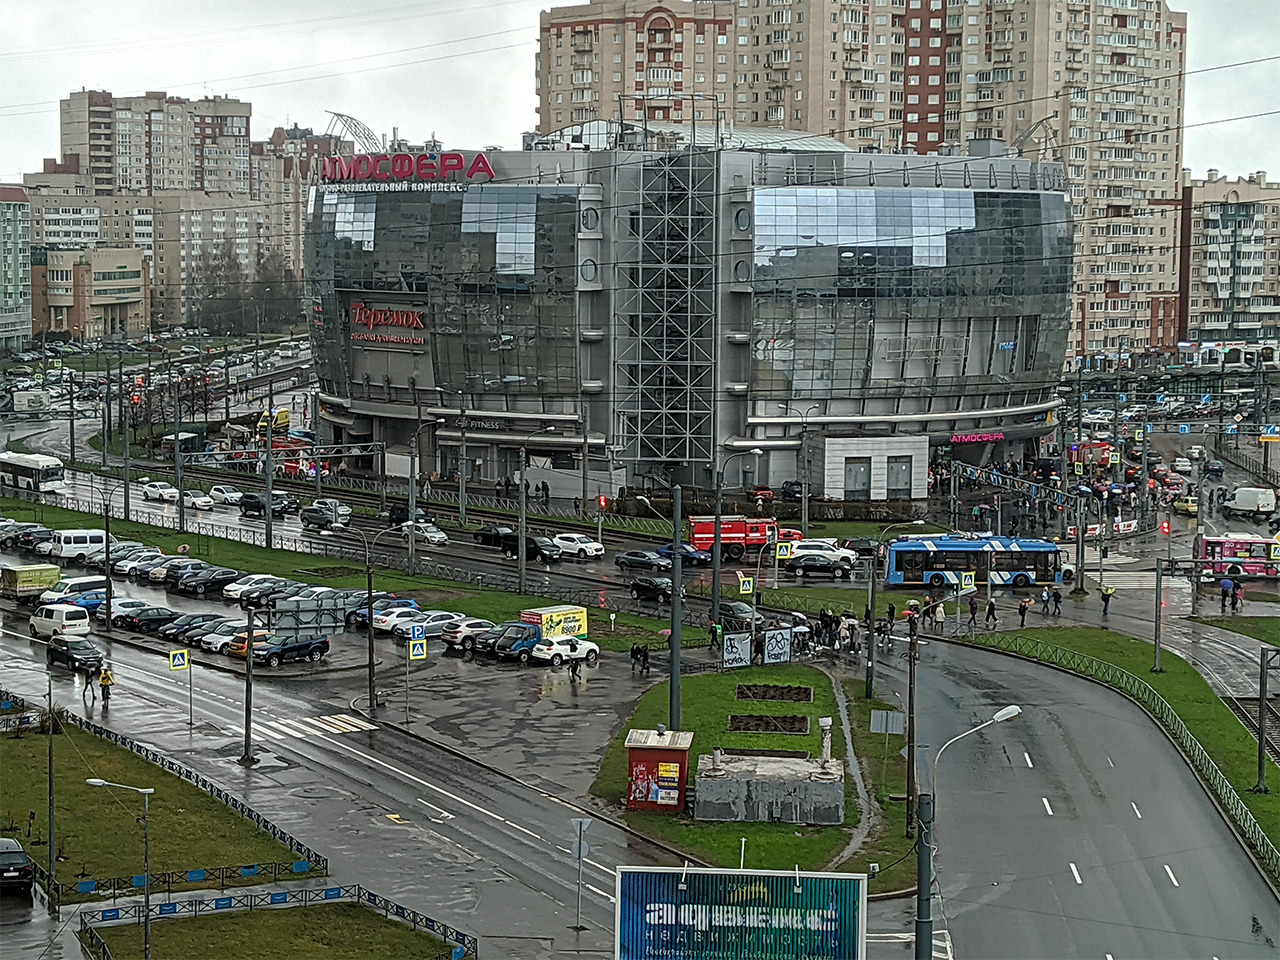 Сотням посетителей ТРК в Петербурге пришлось прервать шопинг. Прогулку под дождём обеспечил электросамокат